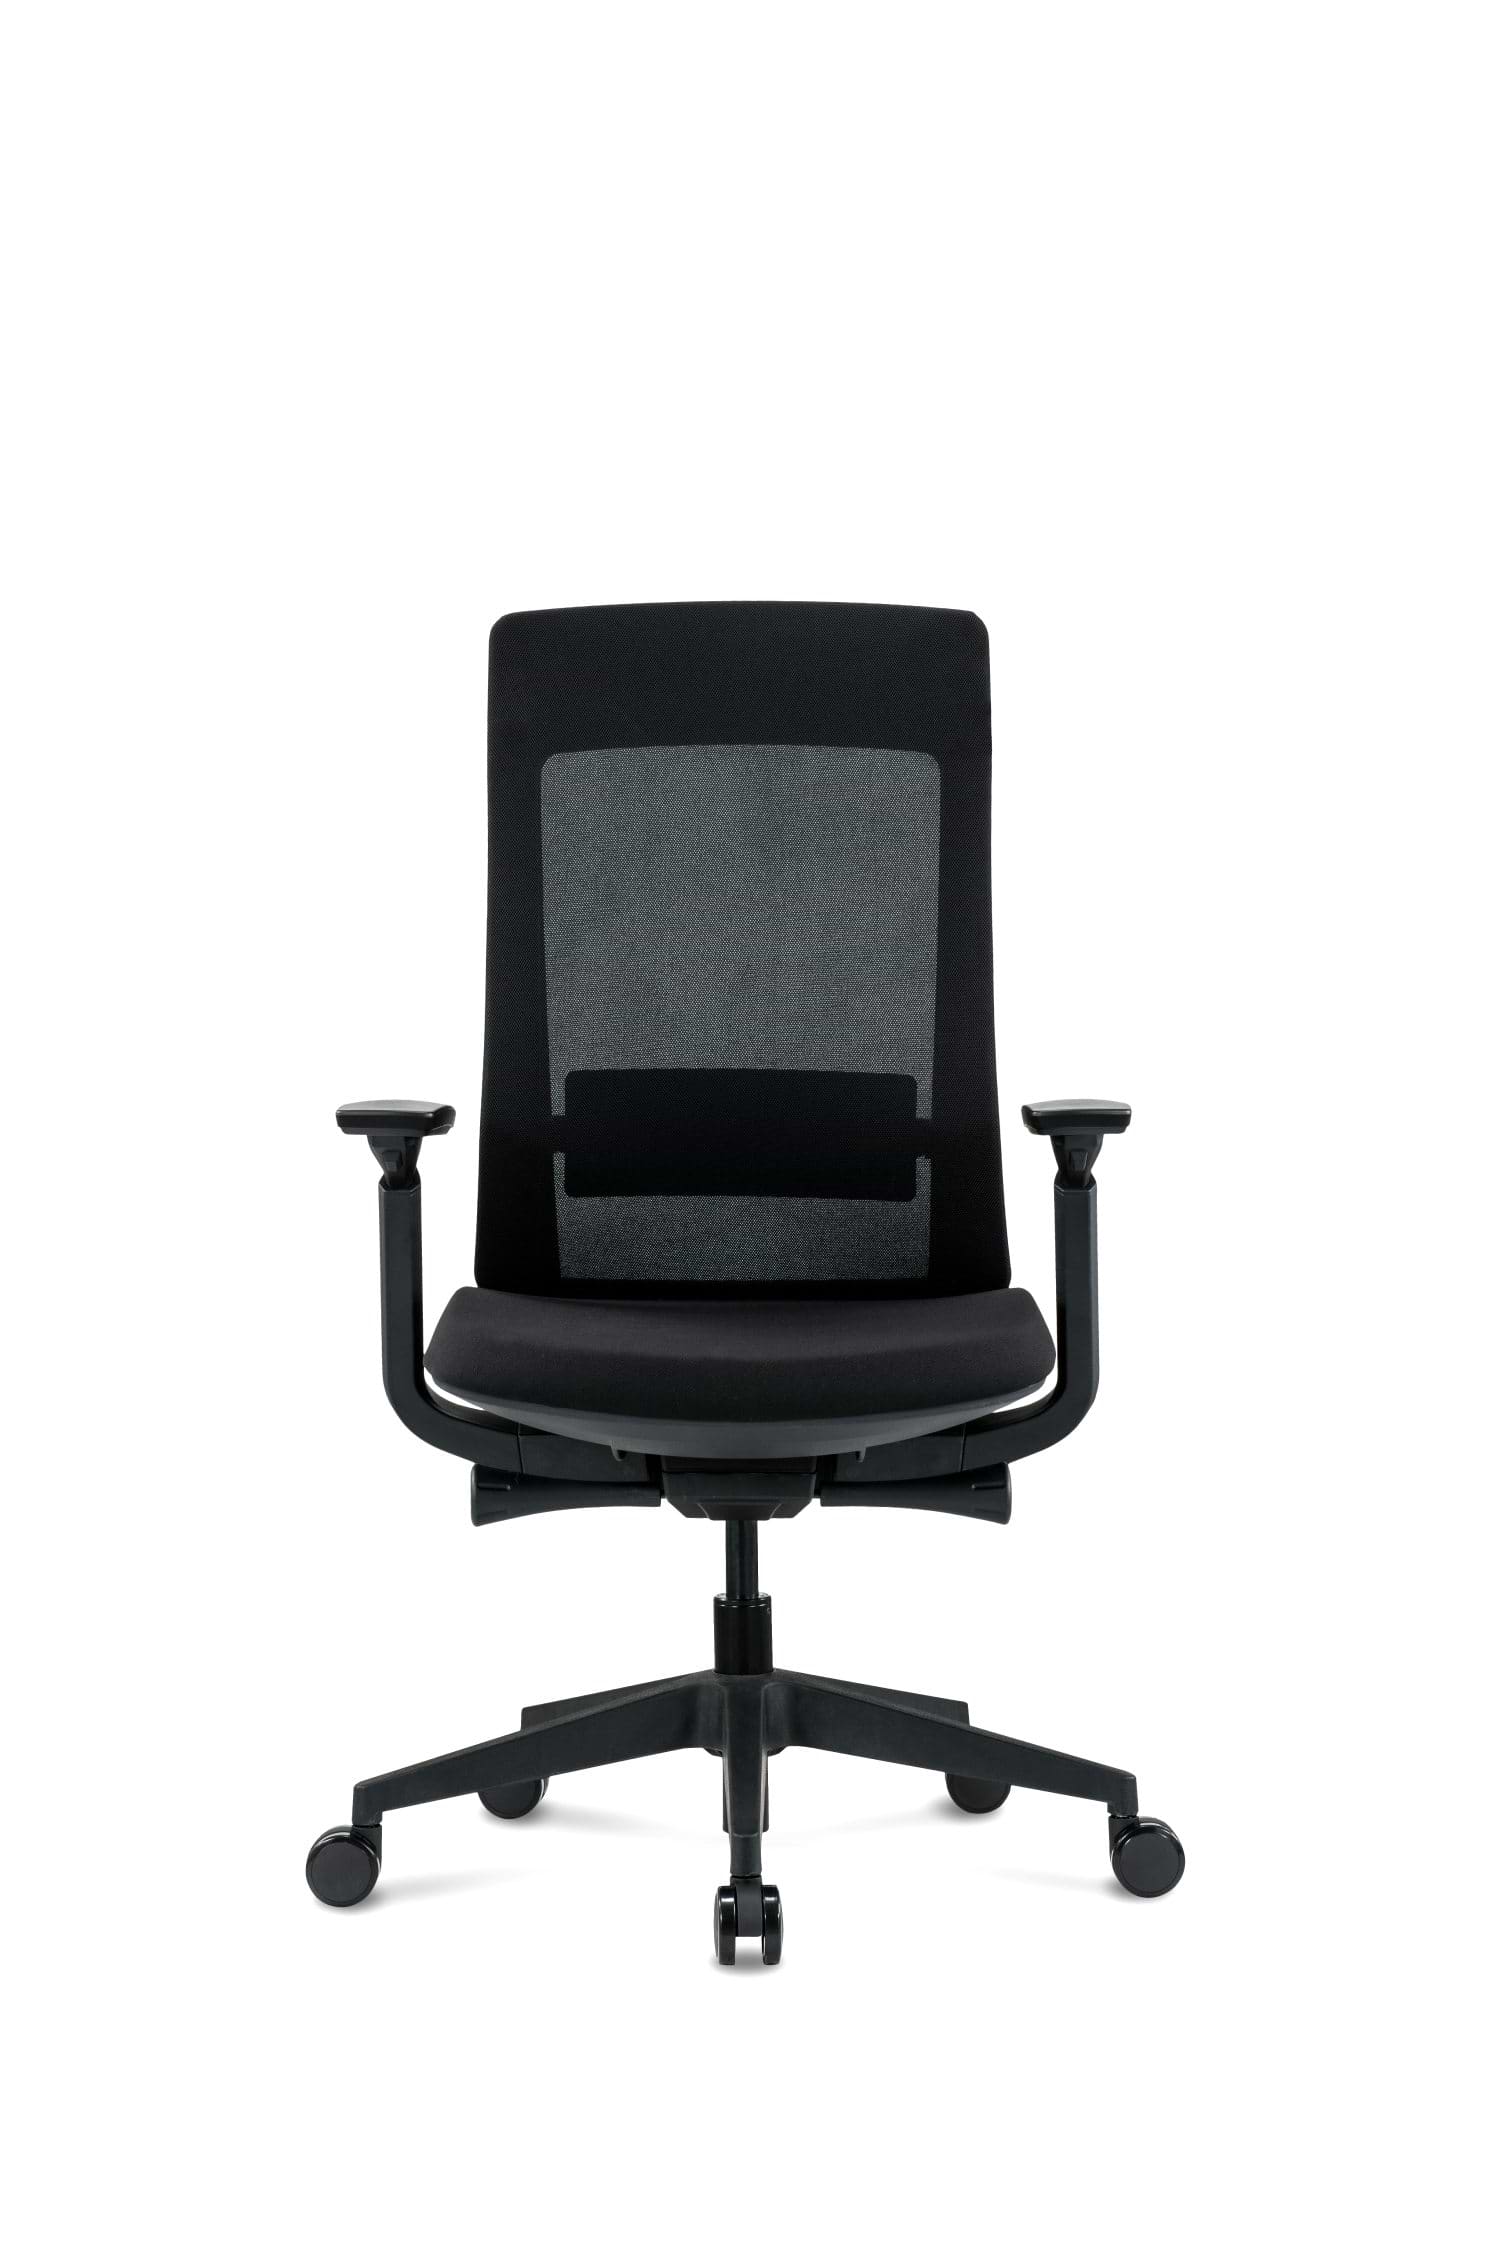 כיסא ארגונומי רב תכליתי לישיבה ממושכת דגם אלביט צבע שחור SitPlus